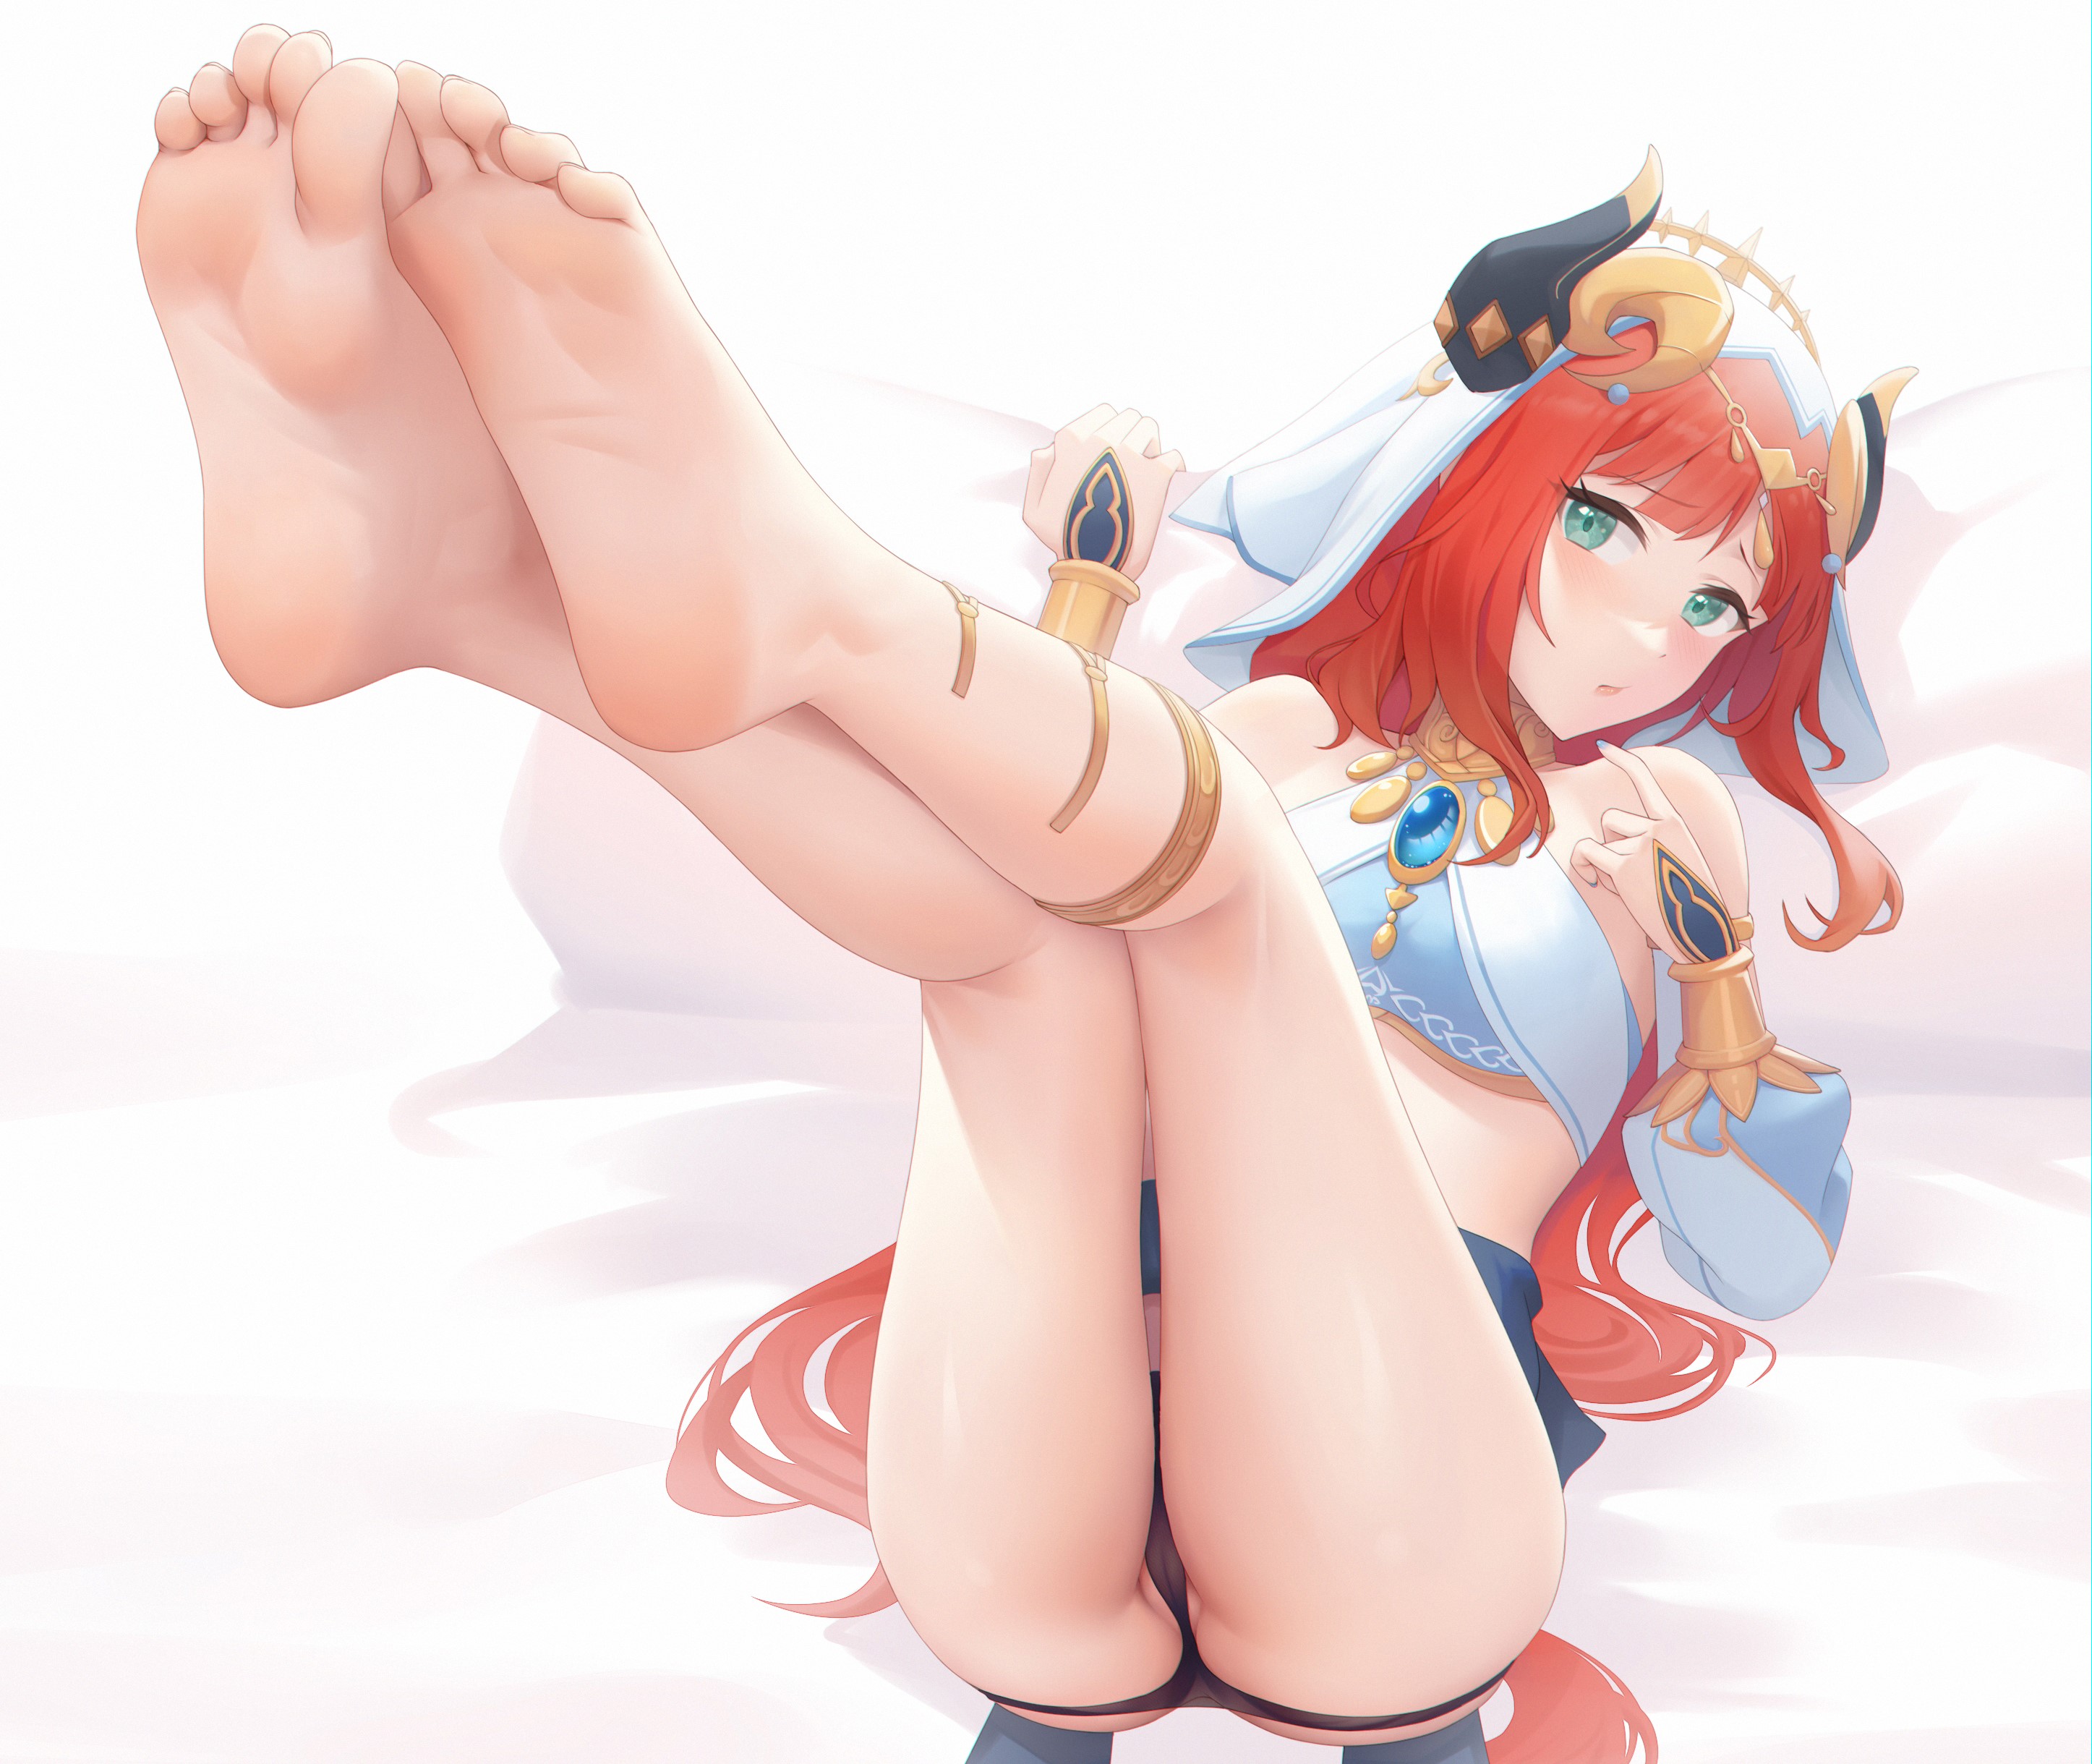 Anime 2893x2439 anime girls redhead legs ass panties feet Nilou (Genshin Impact) Genshin Impact foot sole horns